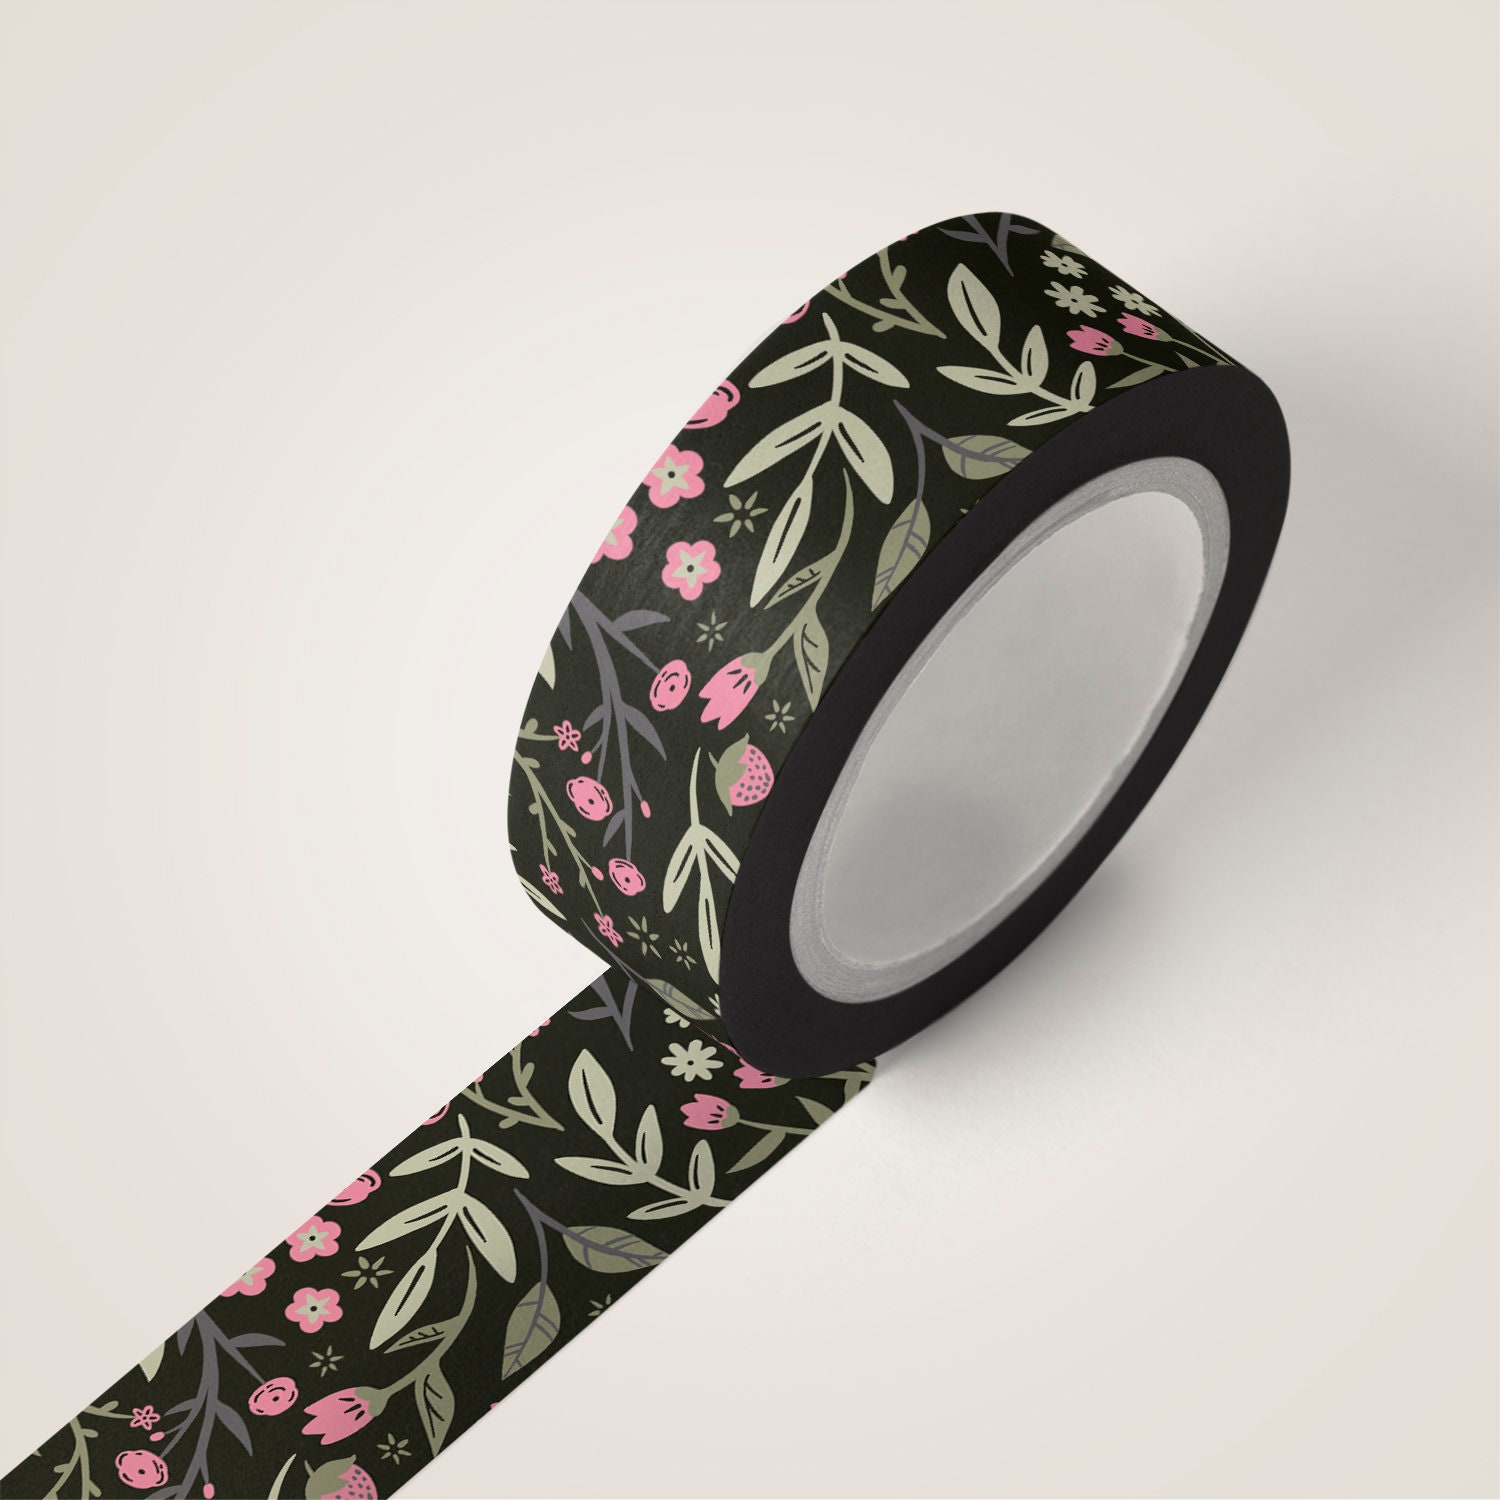 25mm Florist Tape, Green White Floral Stem Tape, Flower Tape